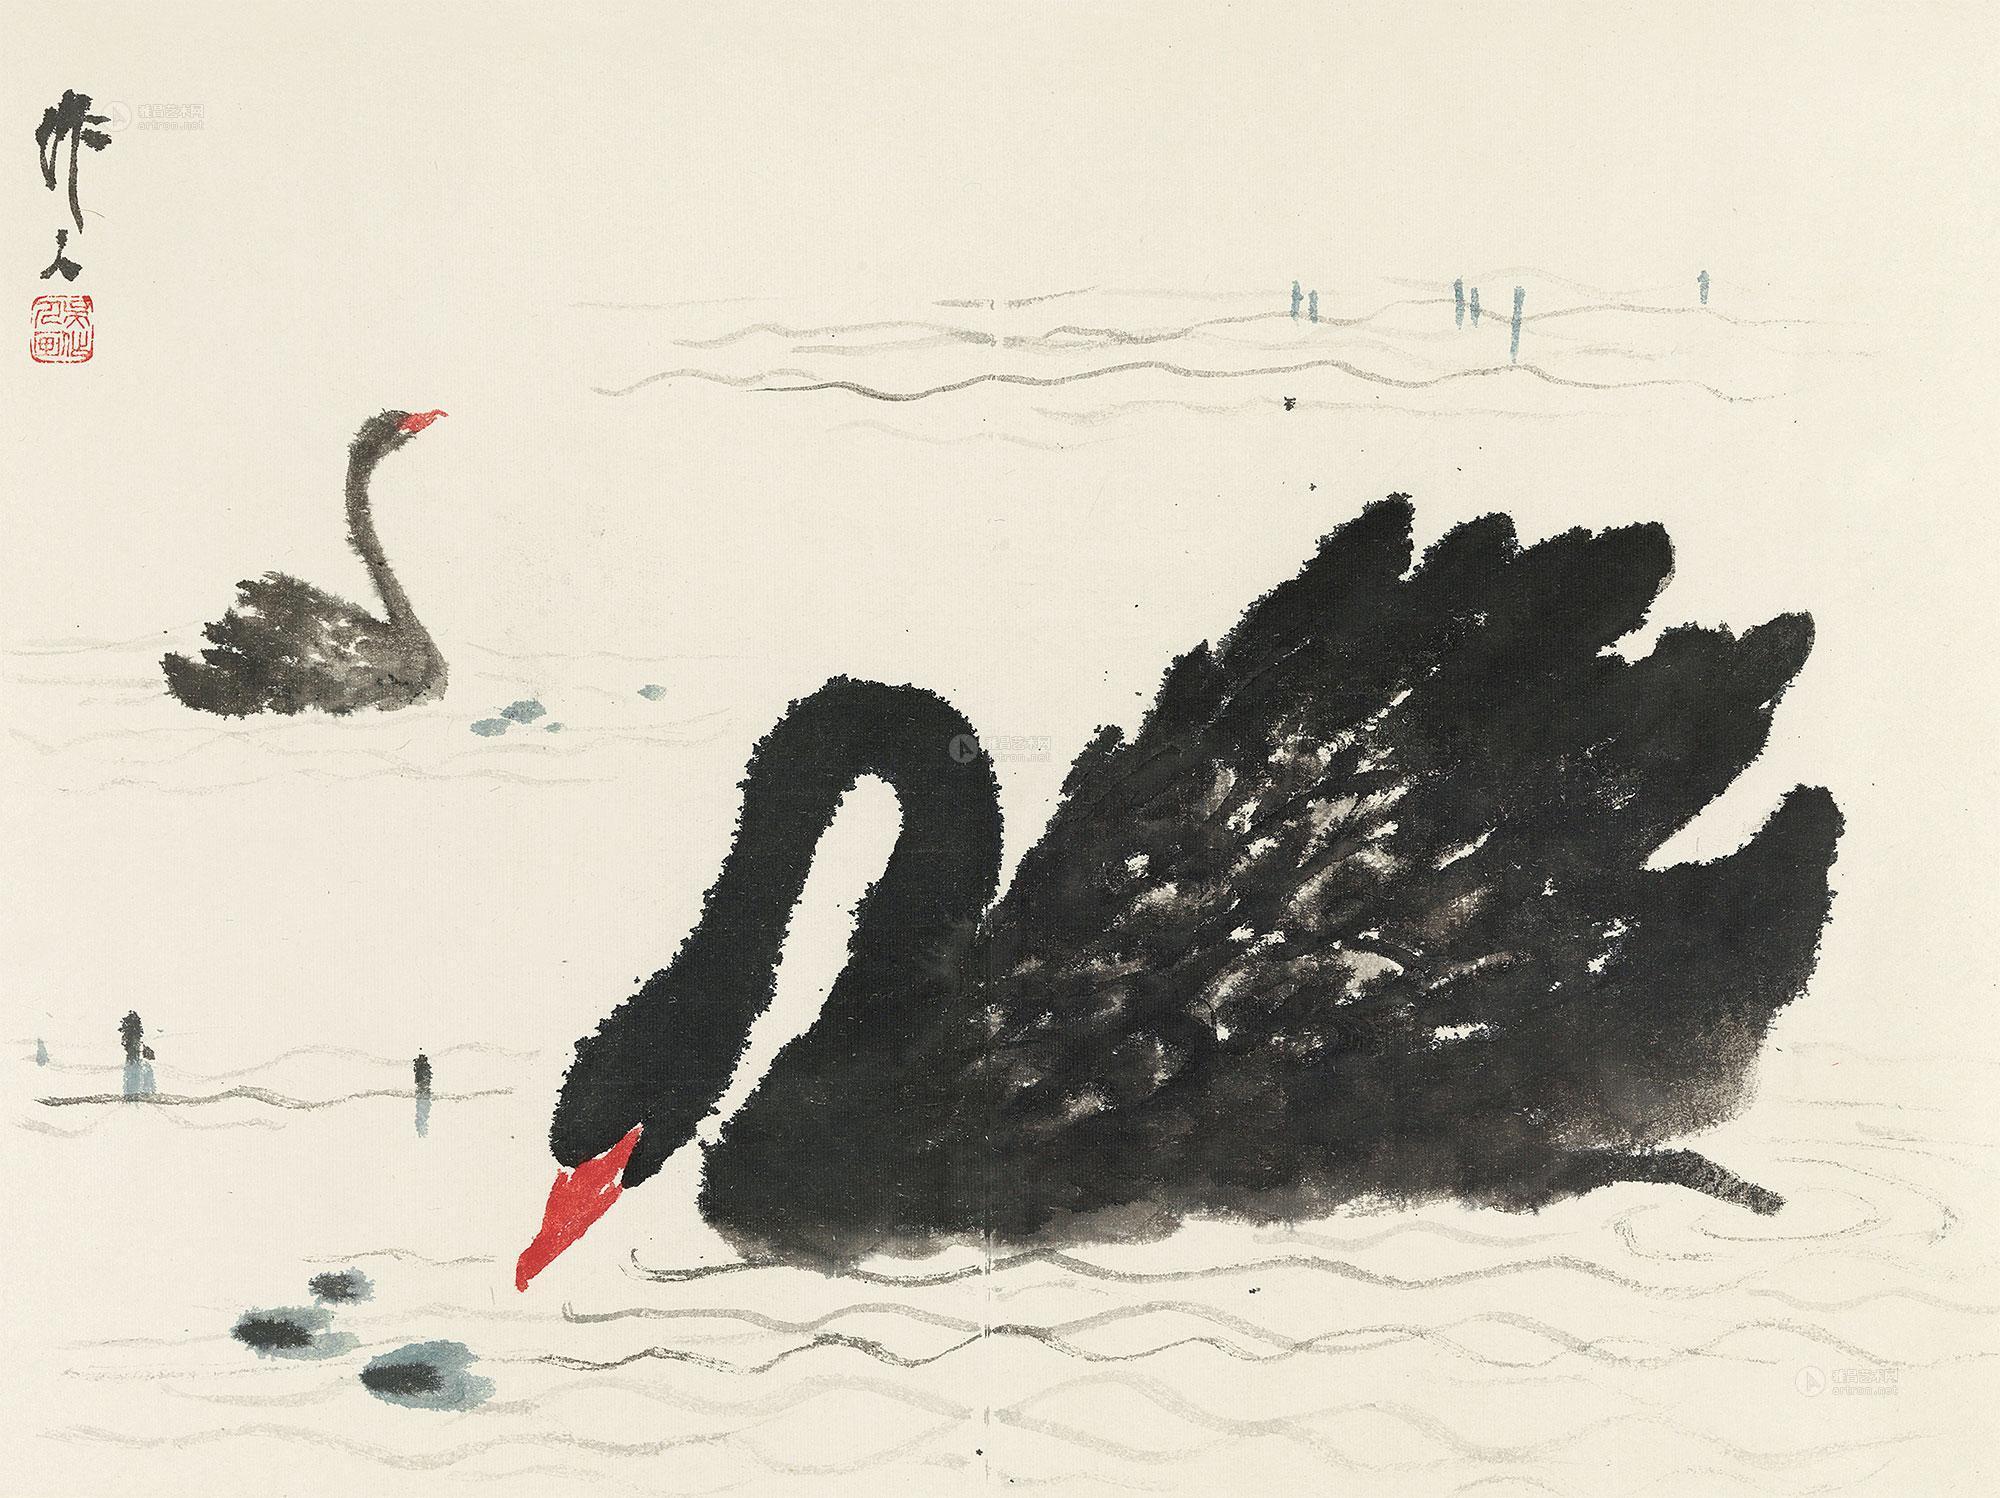 中国最美丽的天鹅画法图片